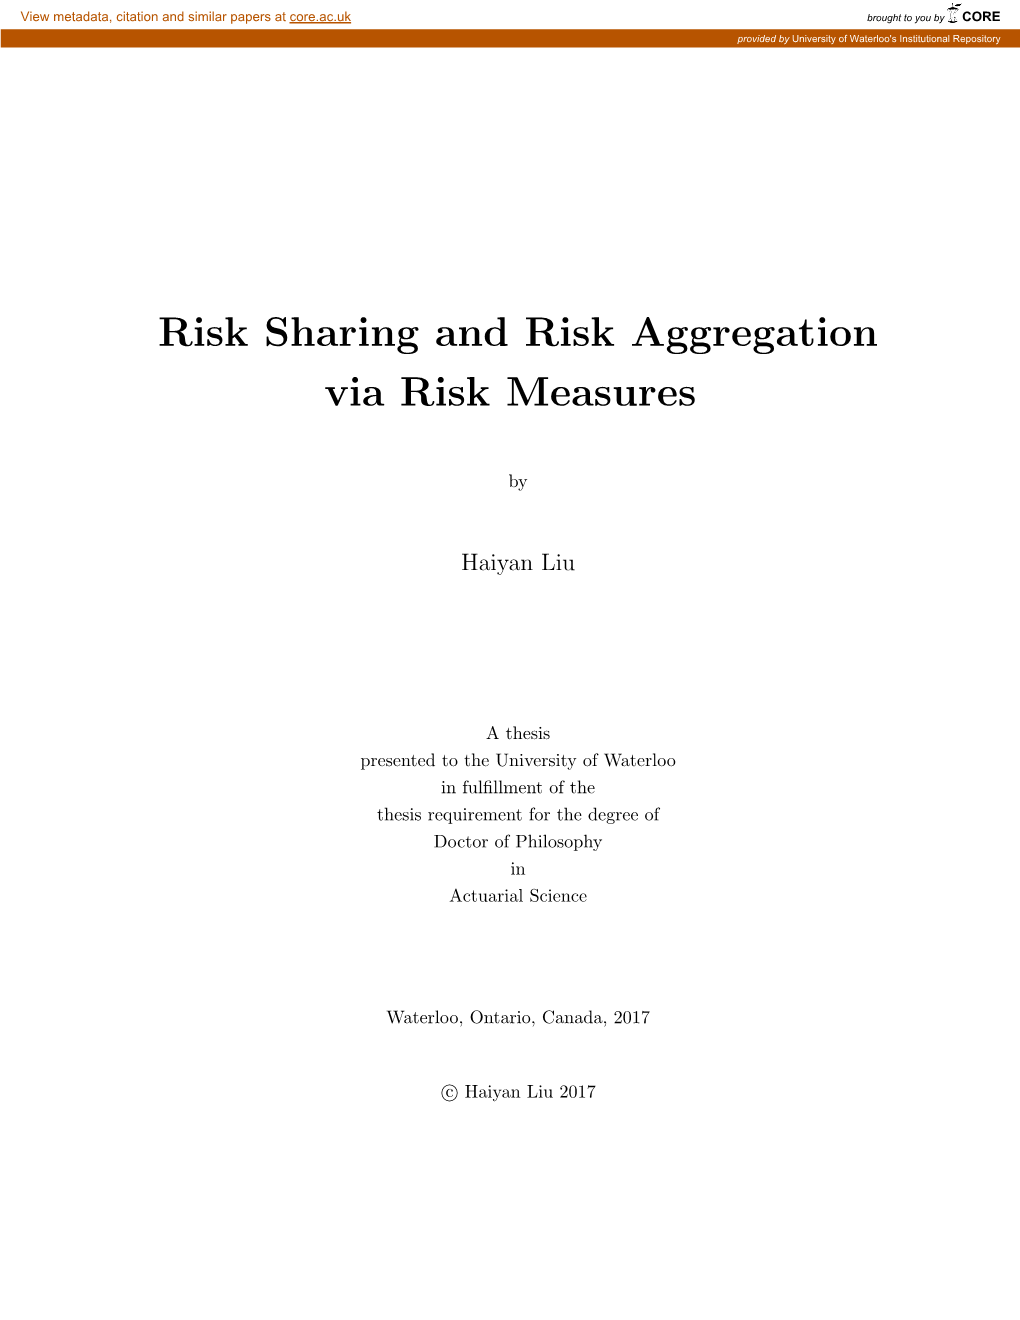 Risk Aggregation and Risk Sharing Via Risk Measure